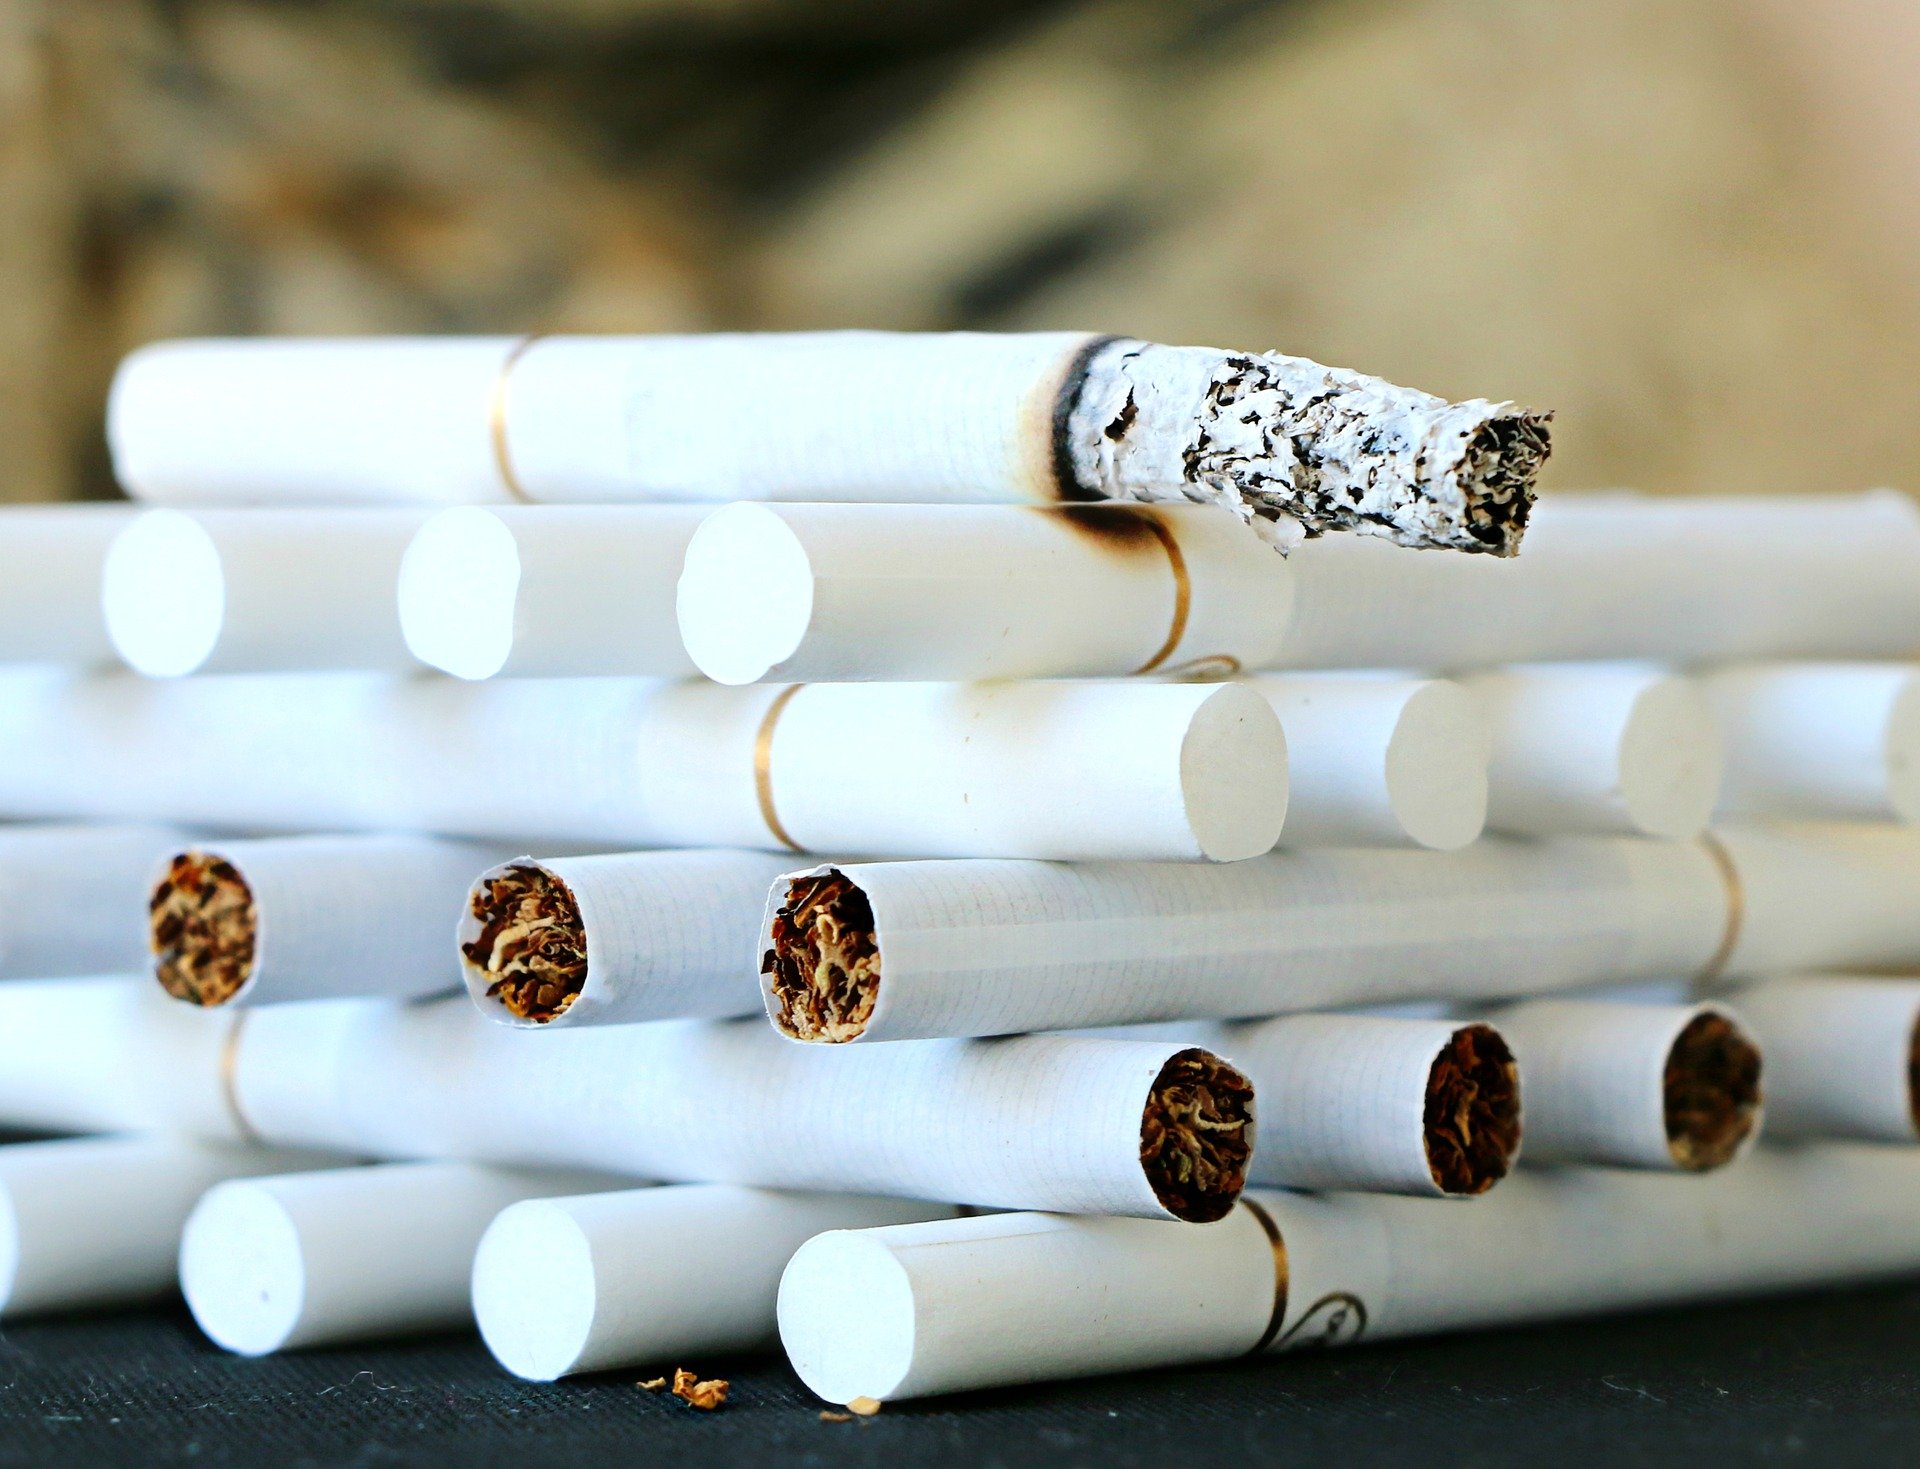 cigarette 1642232 1920.jpg?resize=412,232 - Tabac : Une entreprise britannique offre des congés en plus pour les employés non-fumeurs